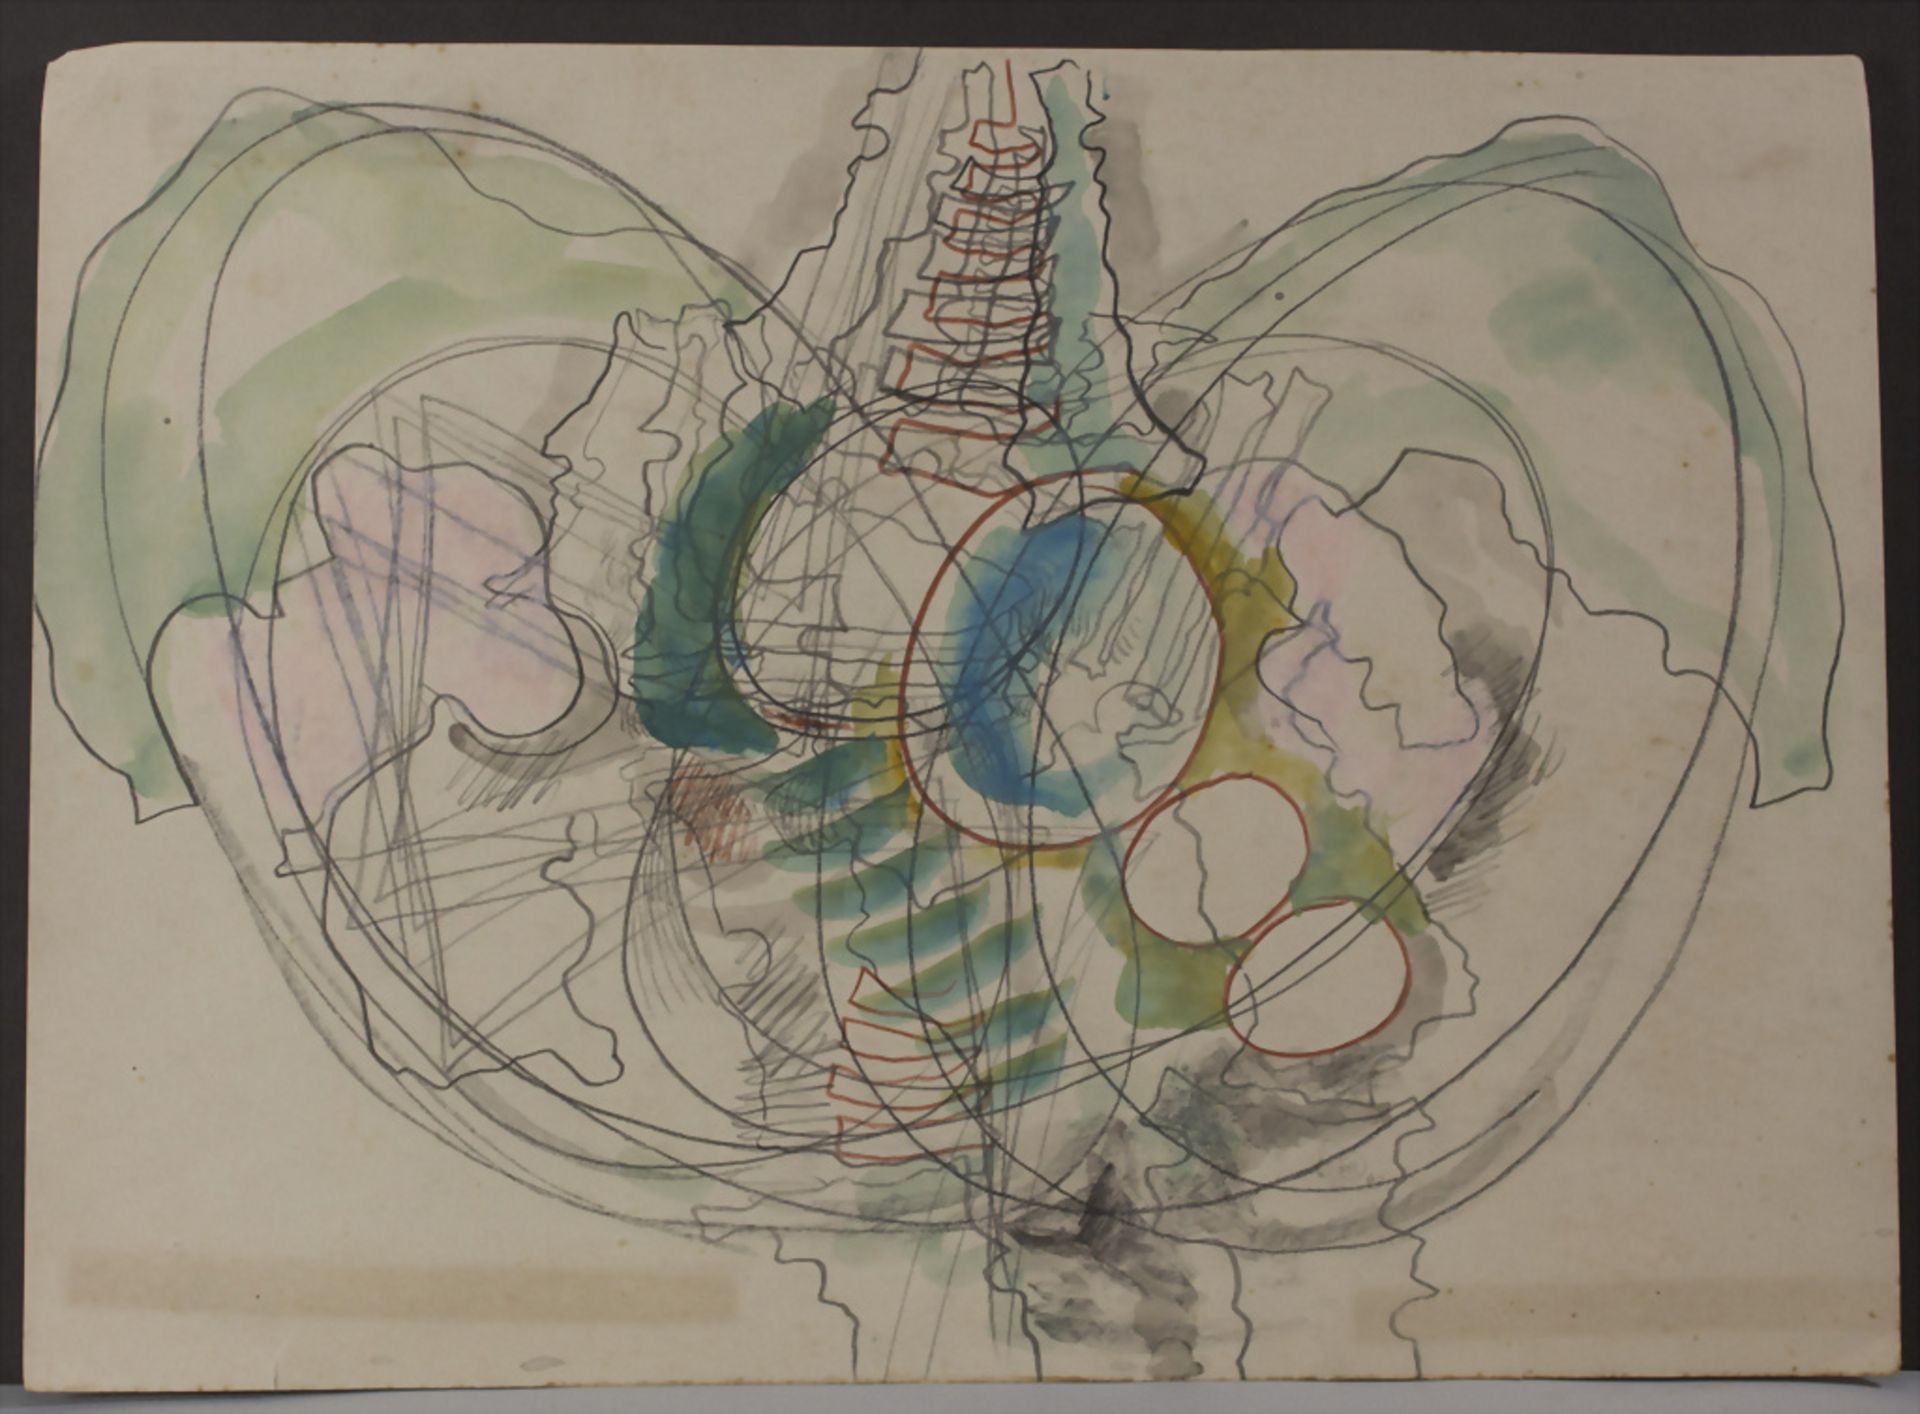 Franz Karl Bernheimer (1911-1997), 'Abstrakte Komposition' / 'An abstract composition', 1962